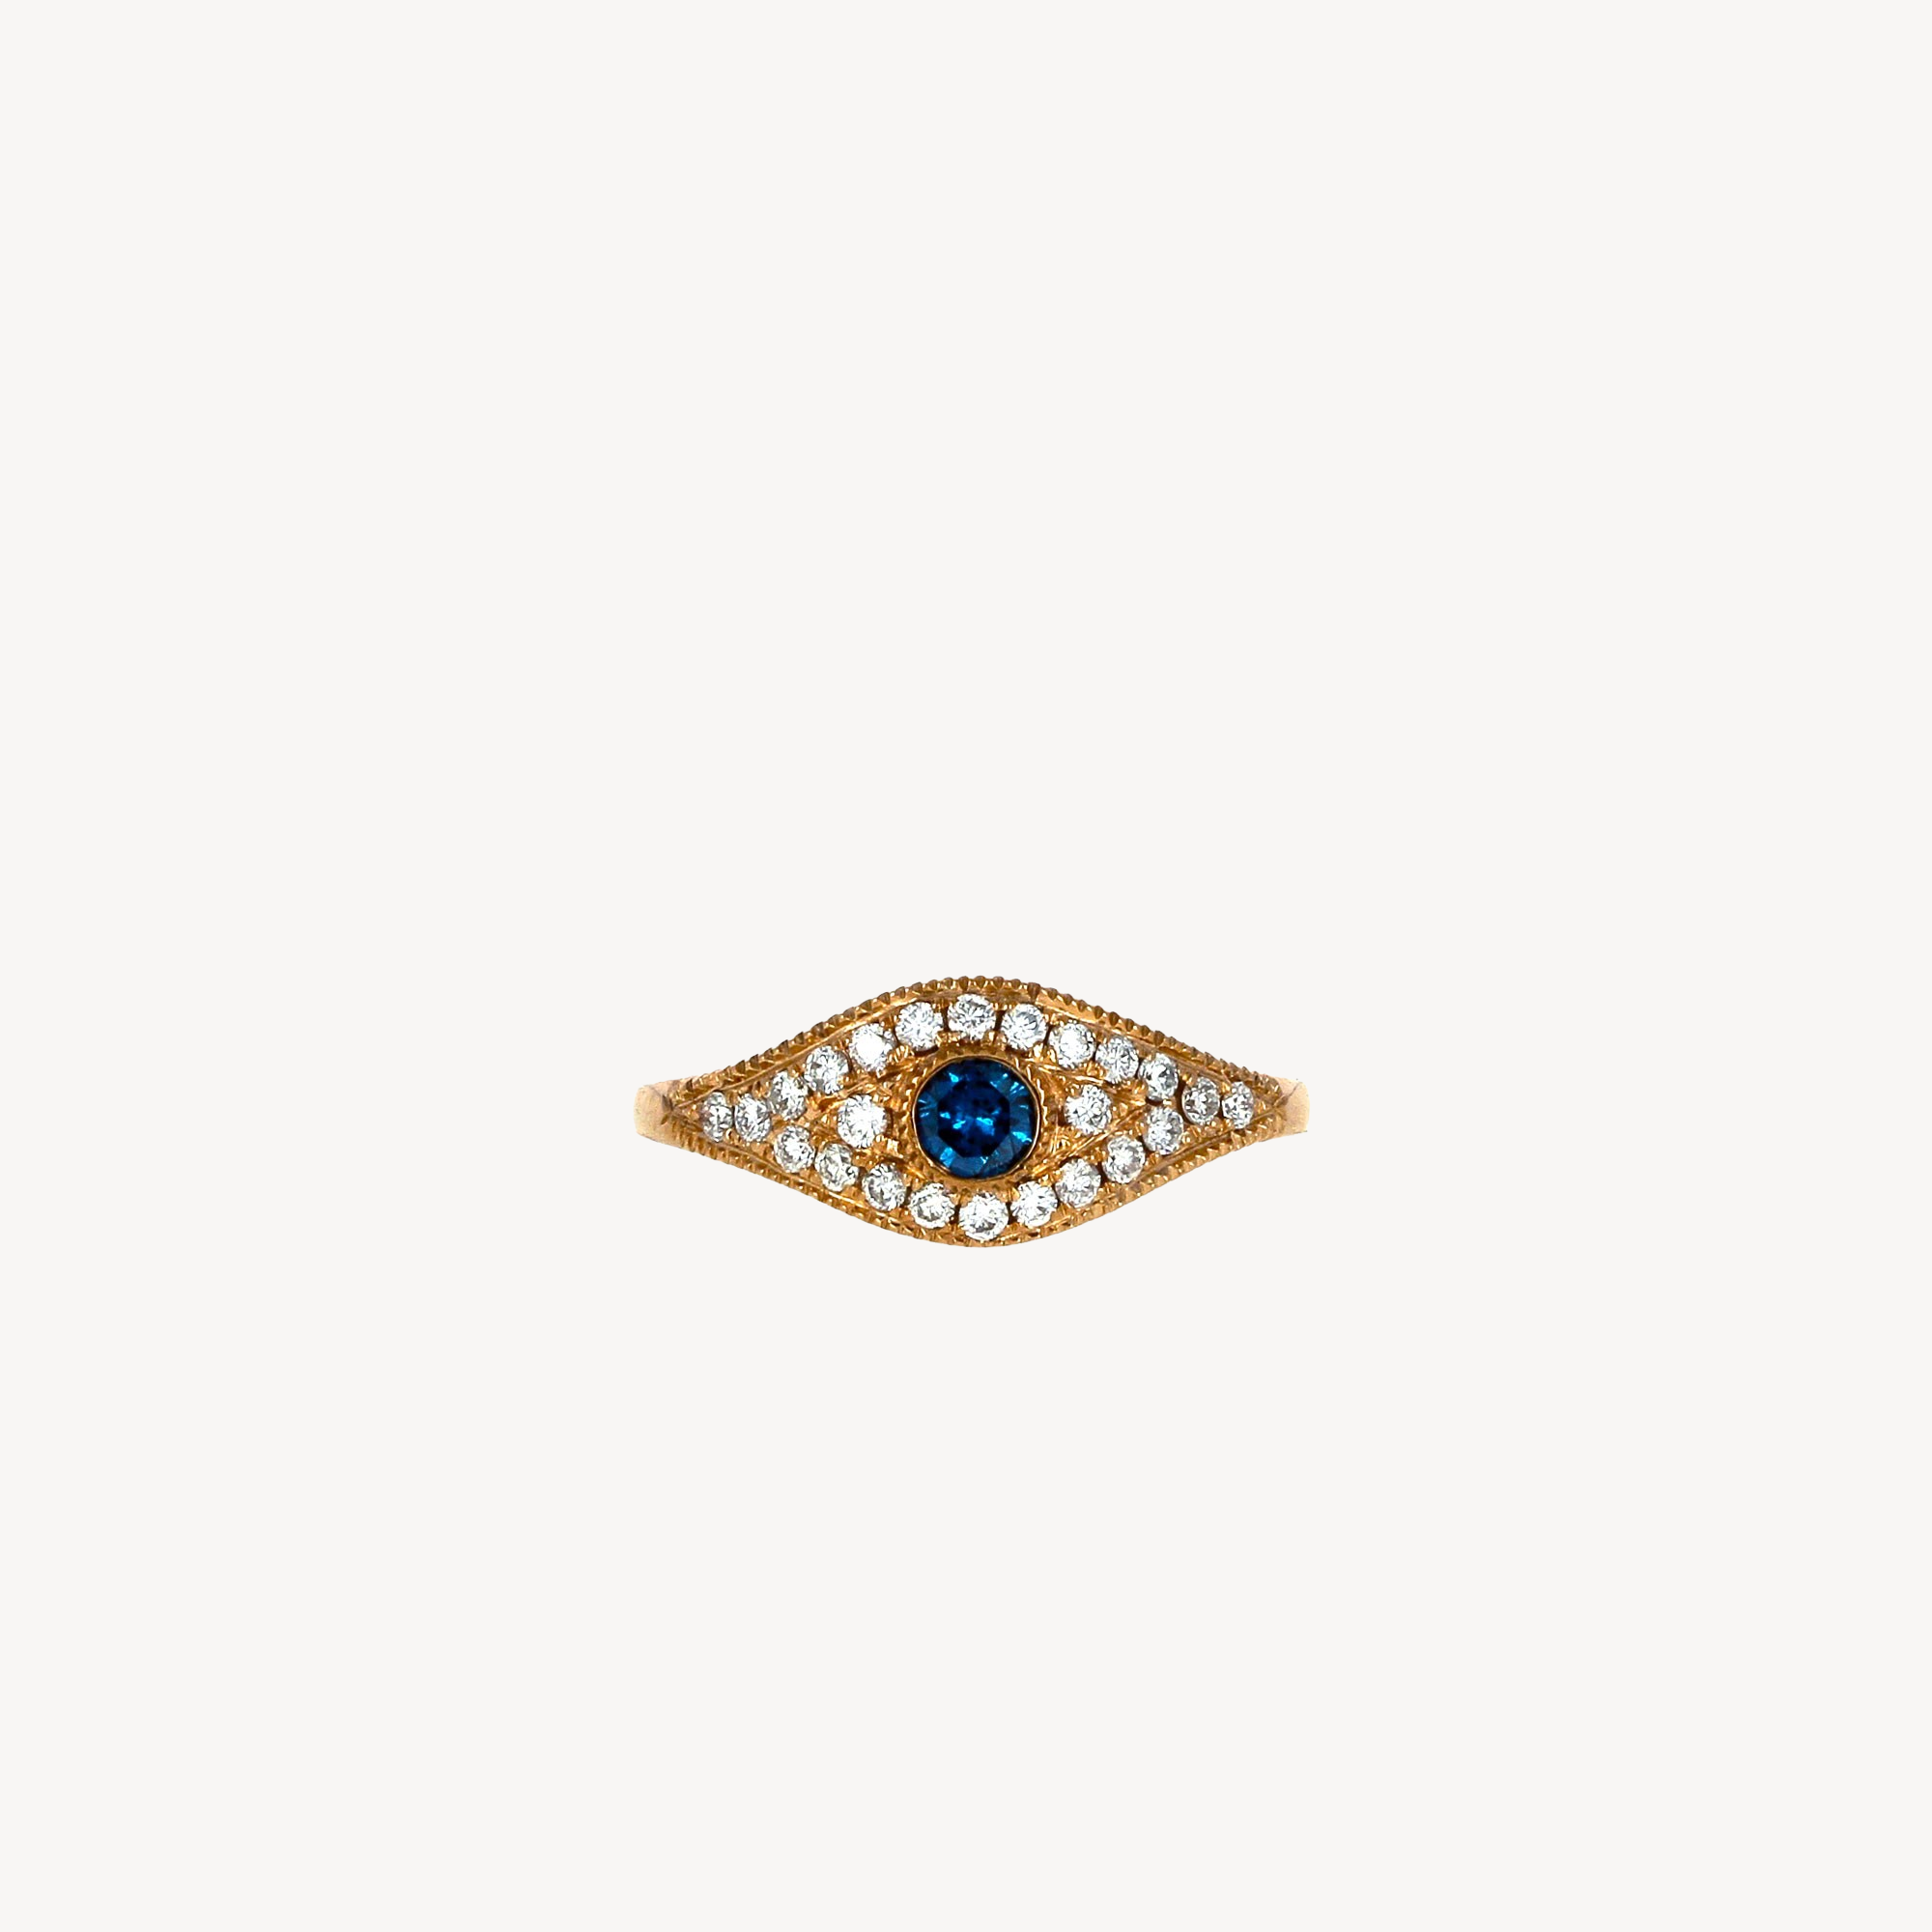 Blue Diamond Eye Ring with Pave Diamonds